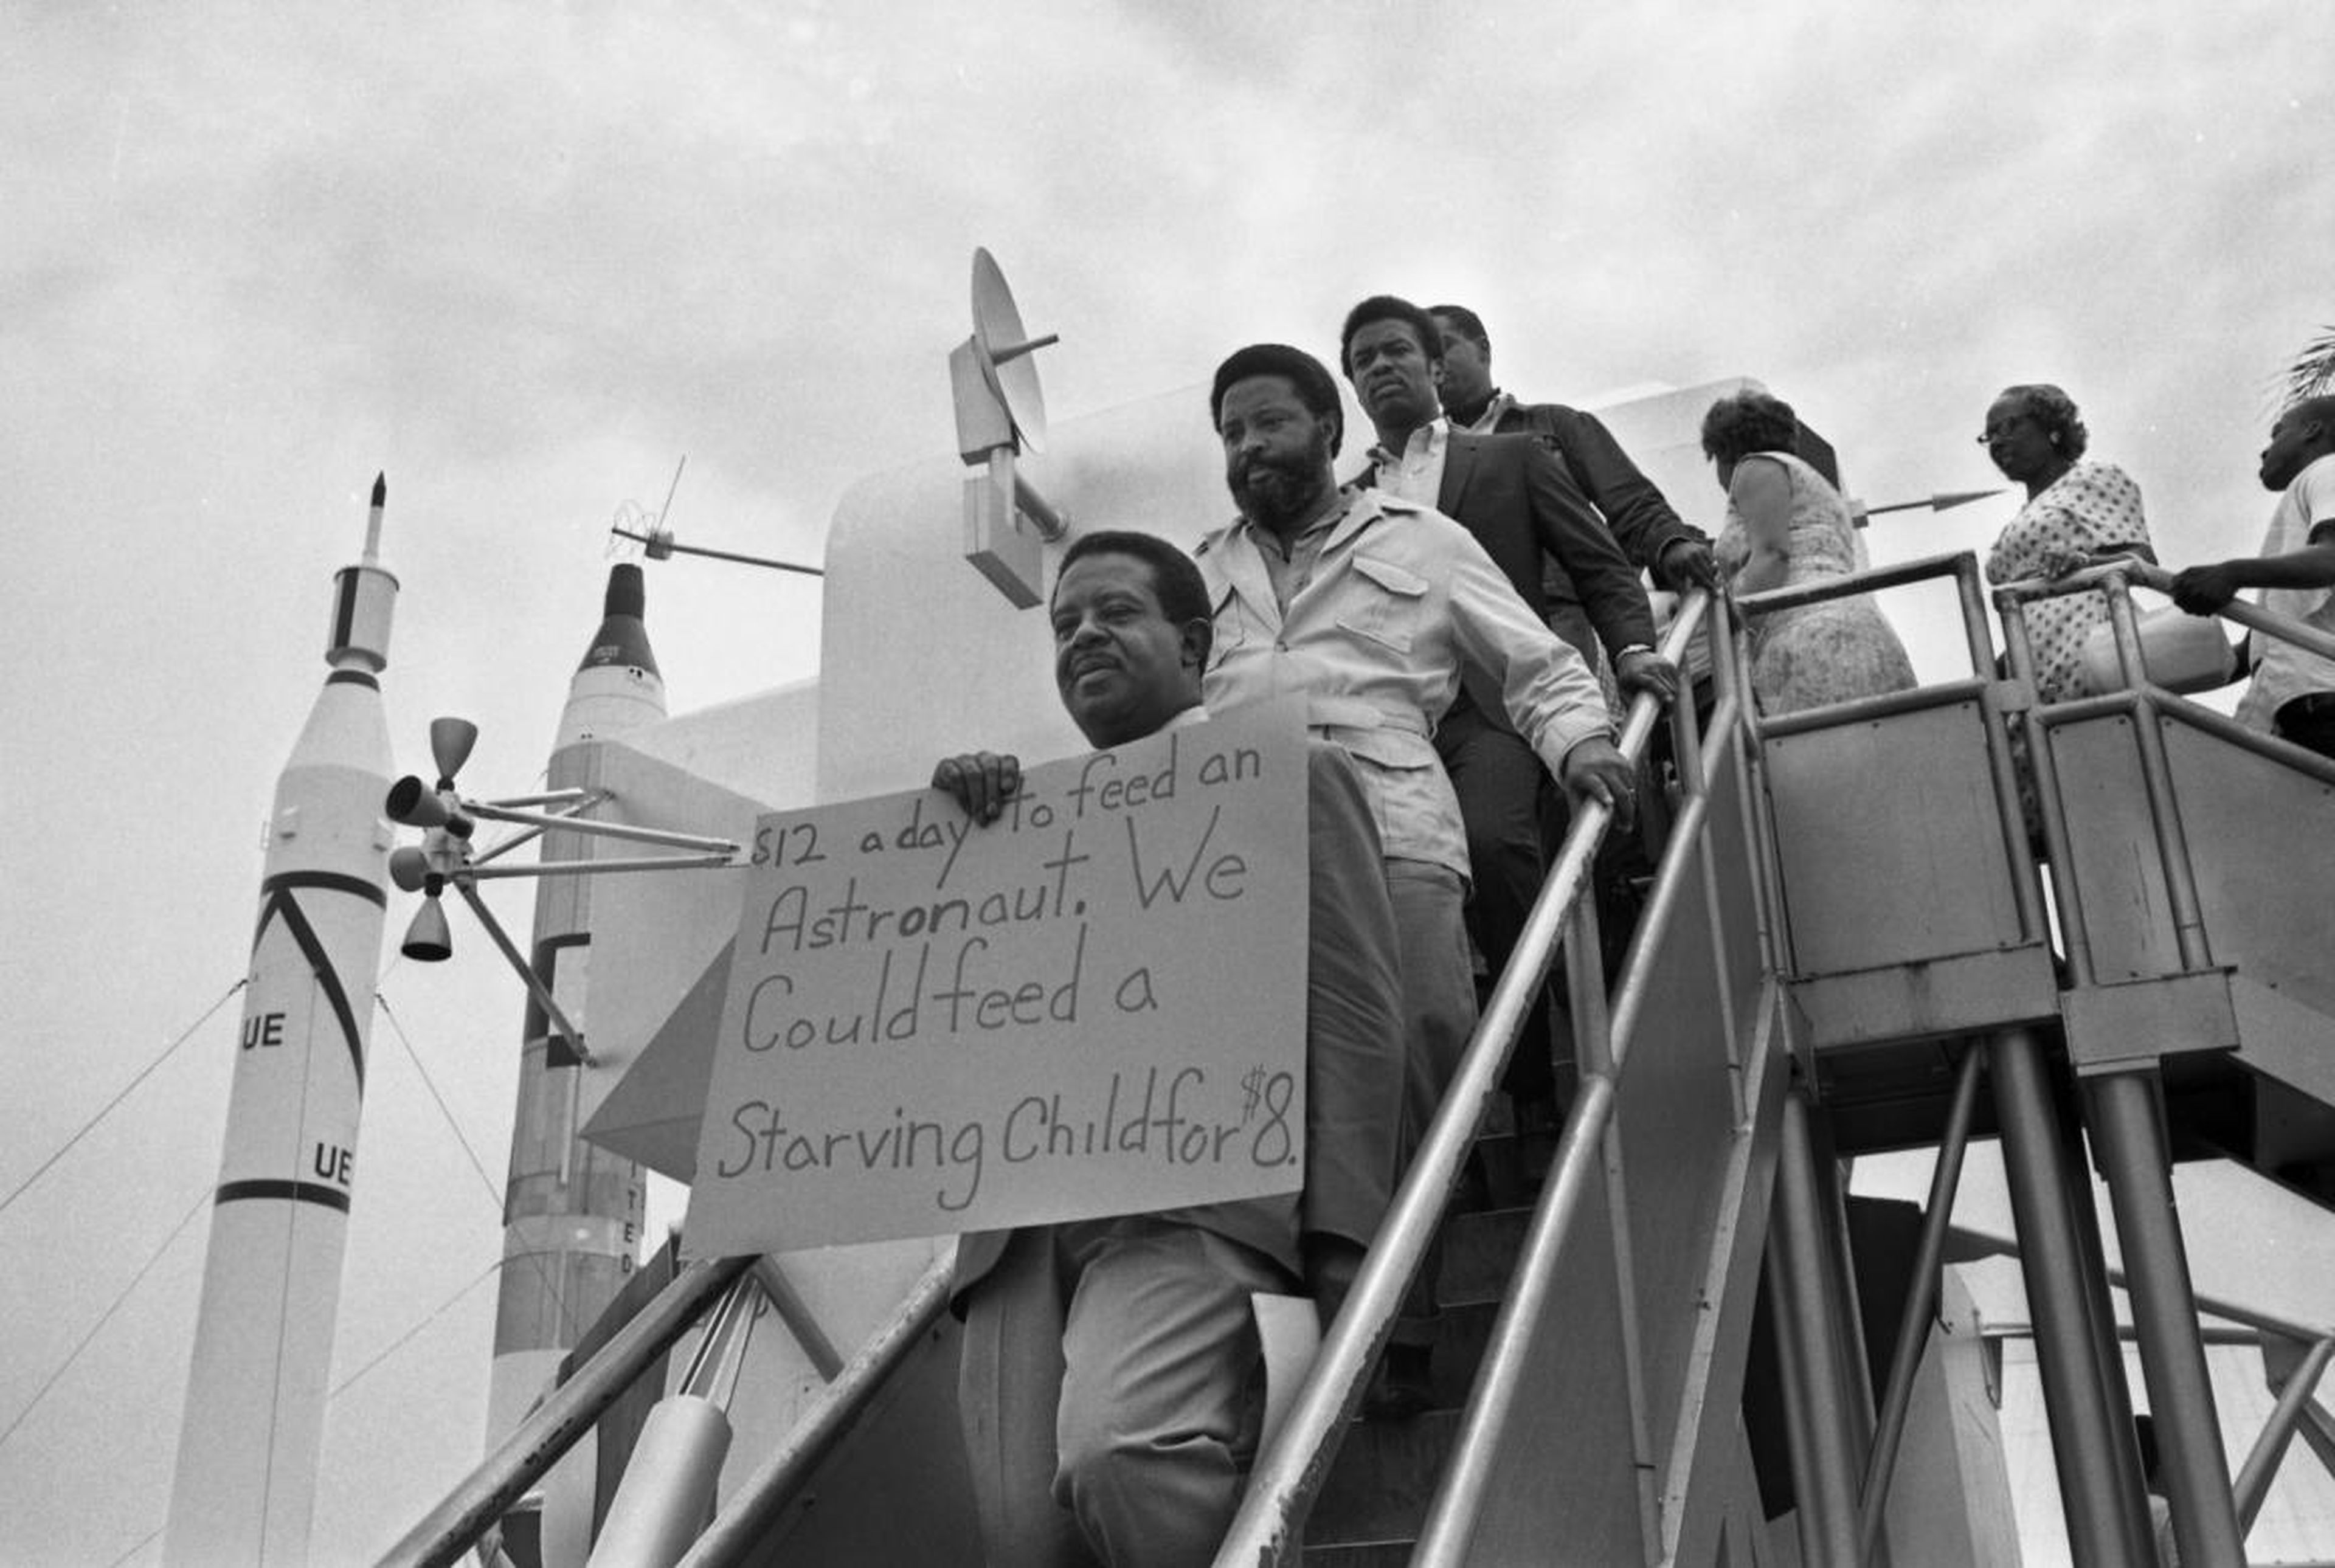 El reverendo Ralph Abernathy se para en los escalones de una maqueta del módulo lunar que muestra un cartel de protesta mientras se manifiesta en el lanzamiento de la luna del Apolo 11.